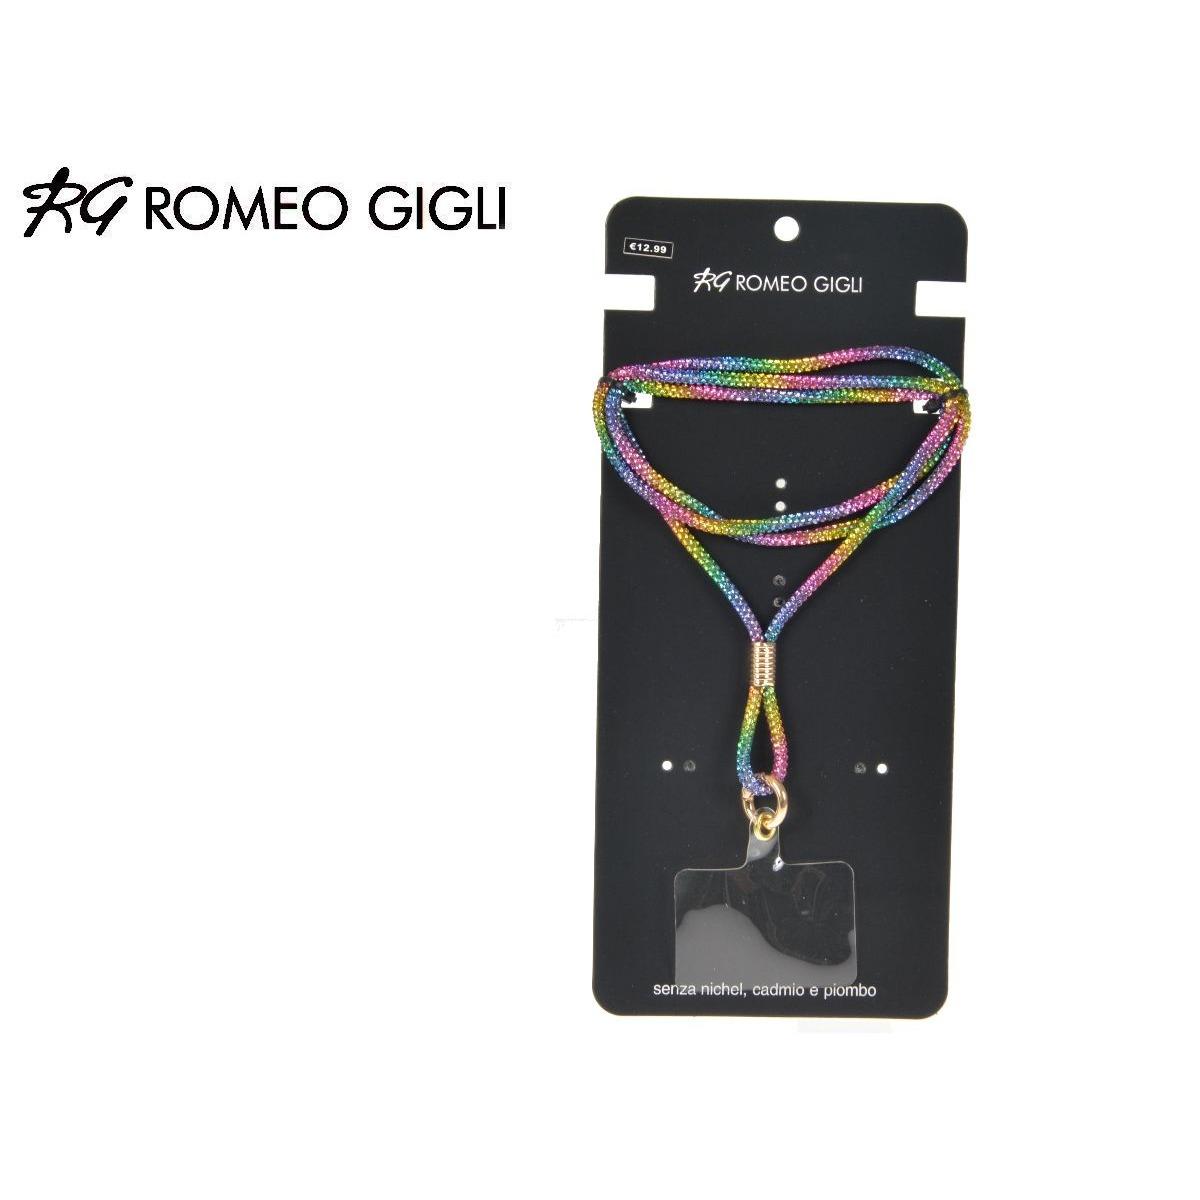 Porta cellulare RG Romeo Gigli